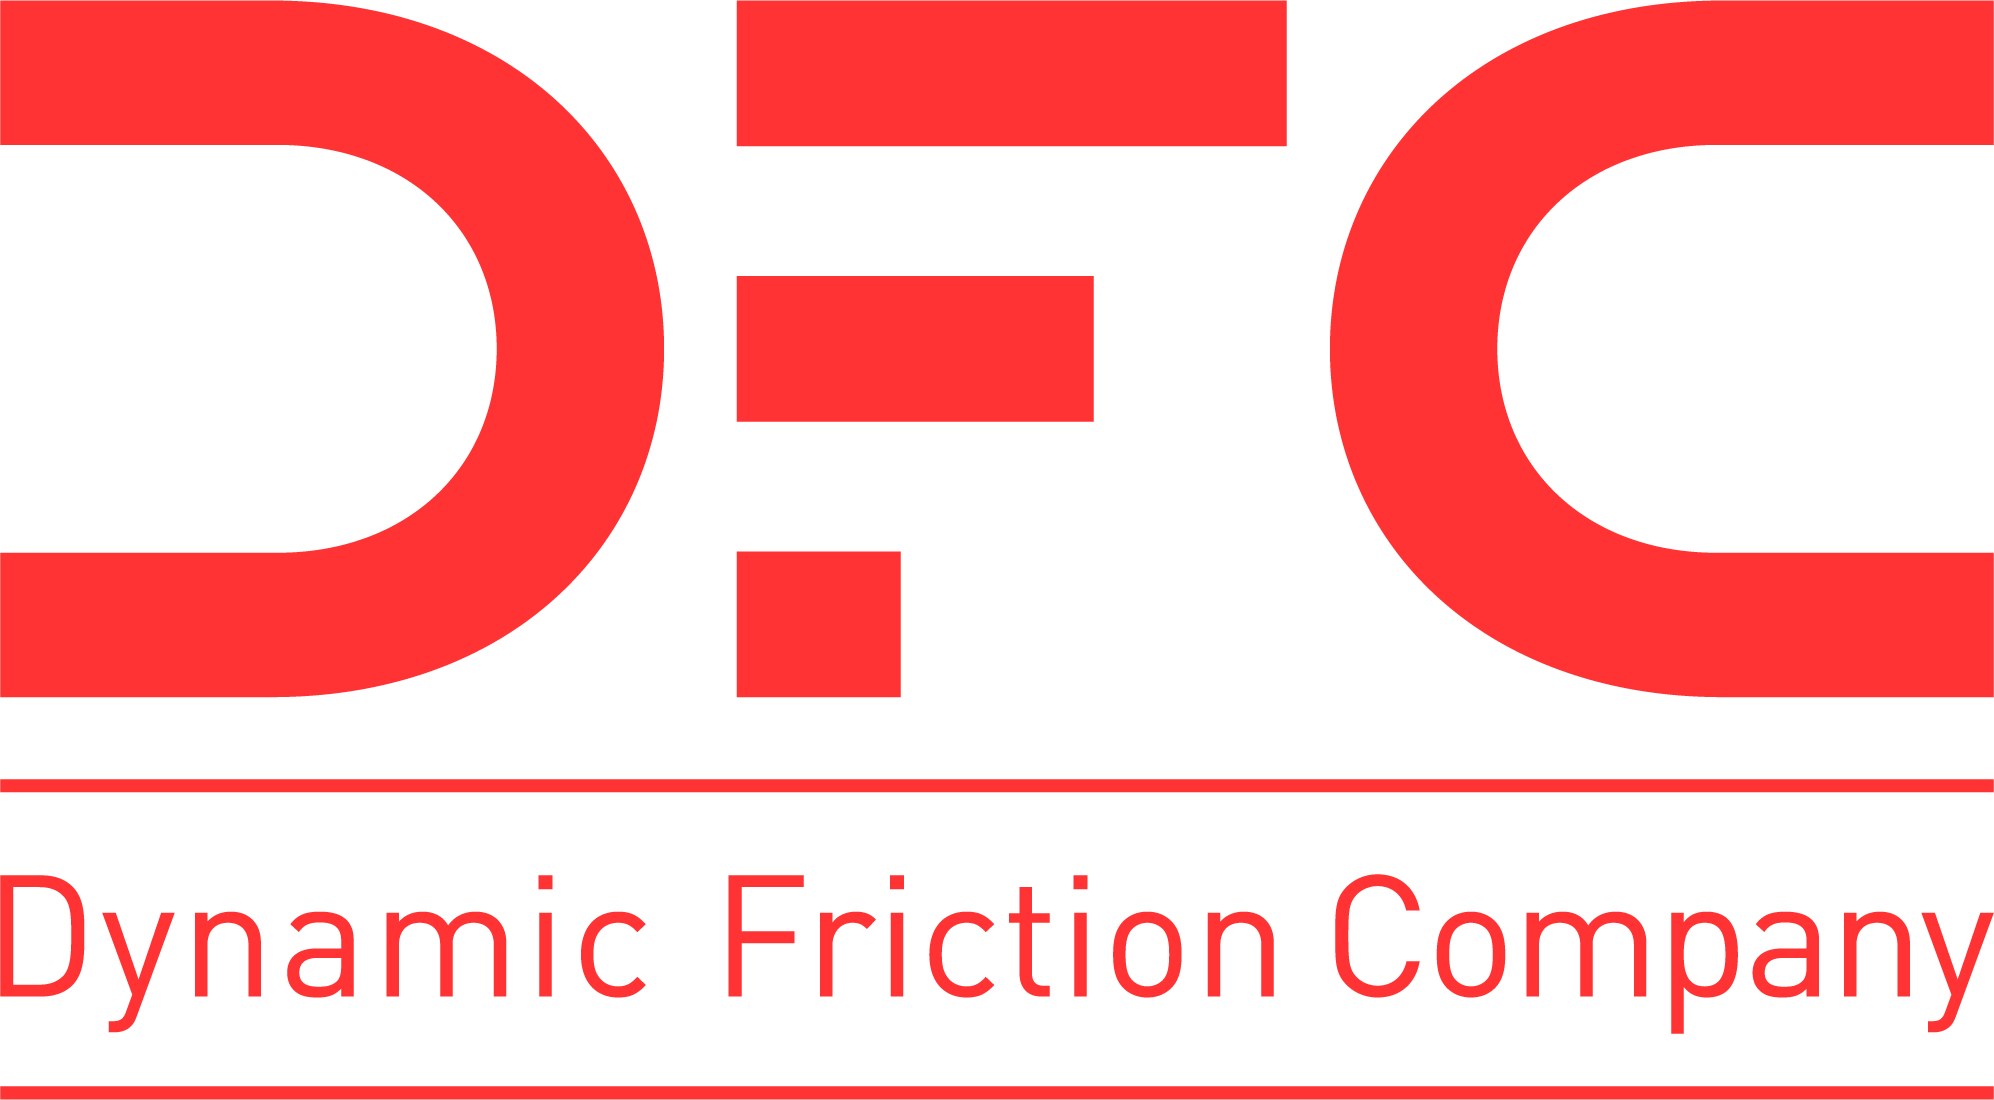 Dynamic Friction Company